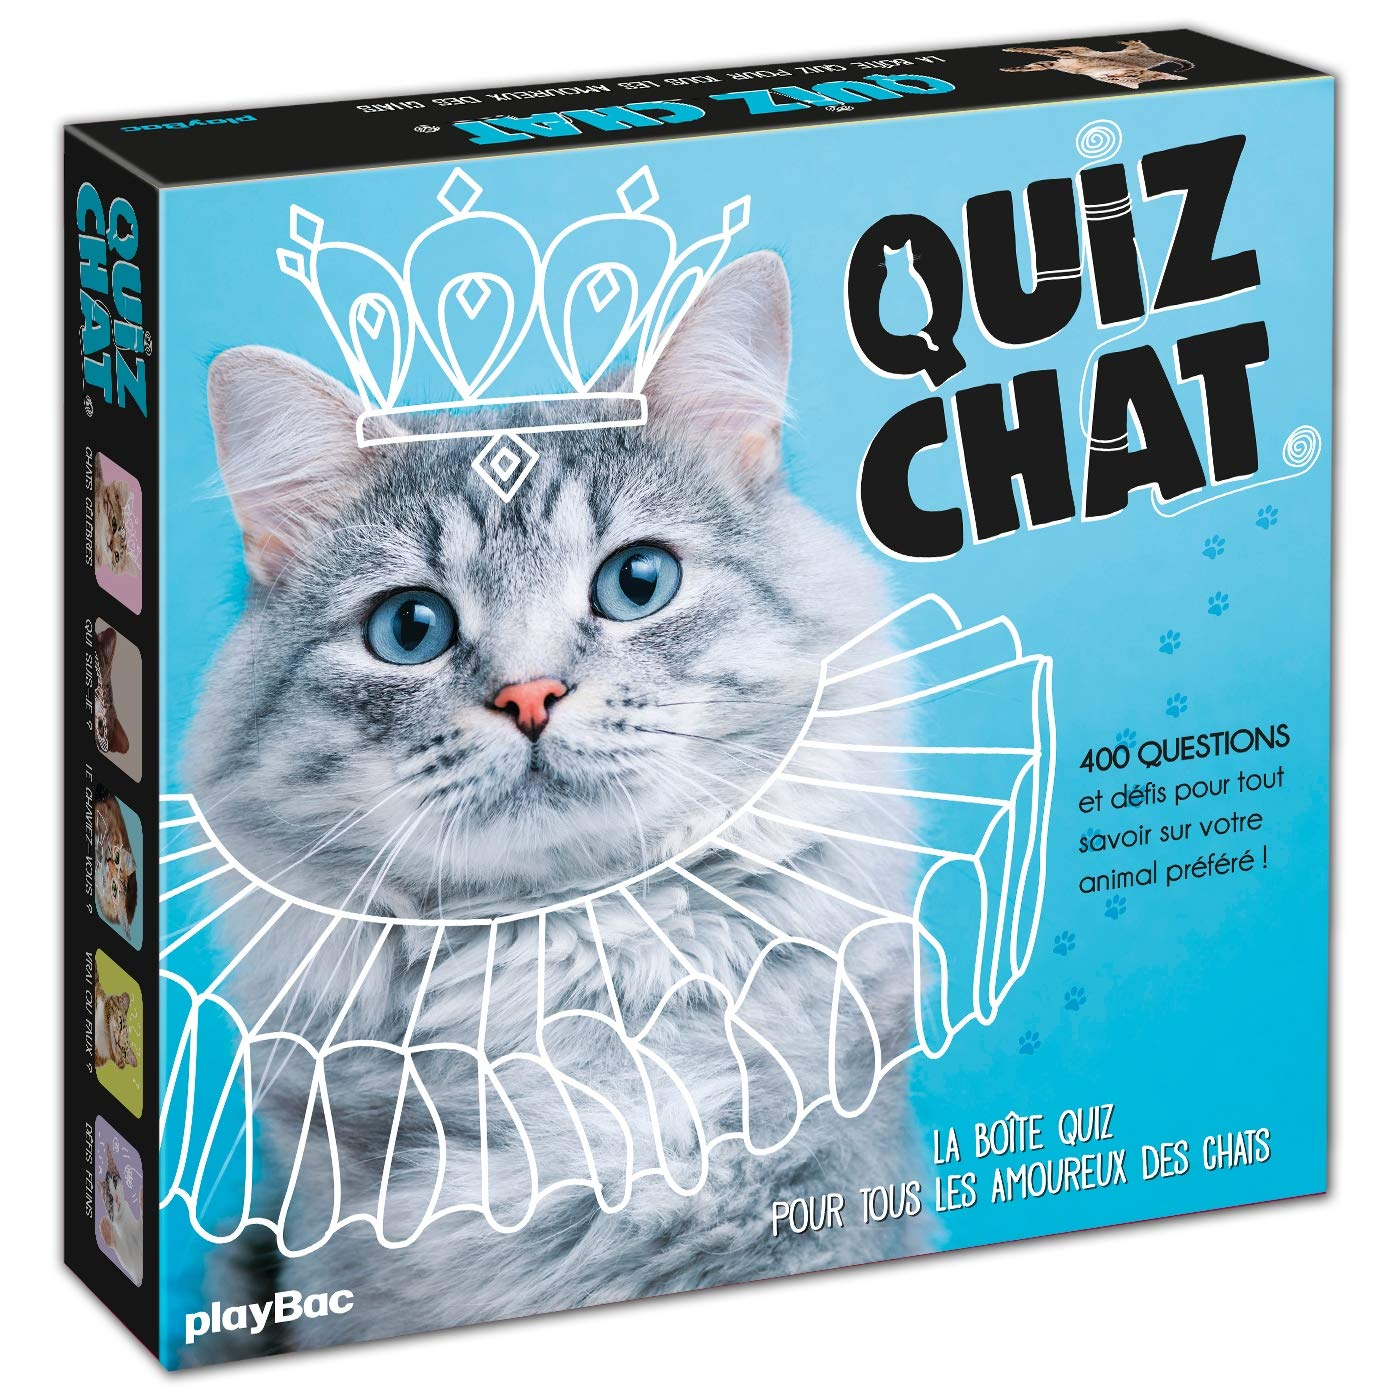 Quiz chat : 350 questions et défis pour tout savoir sur votre animal préféré ! : la boite quiz pour 